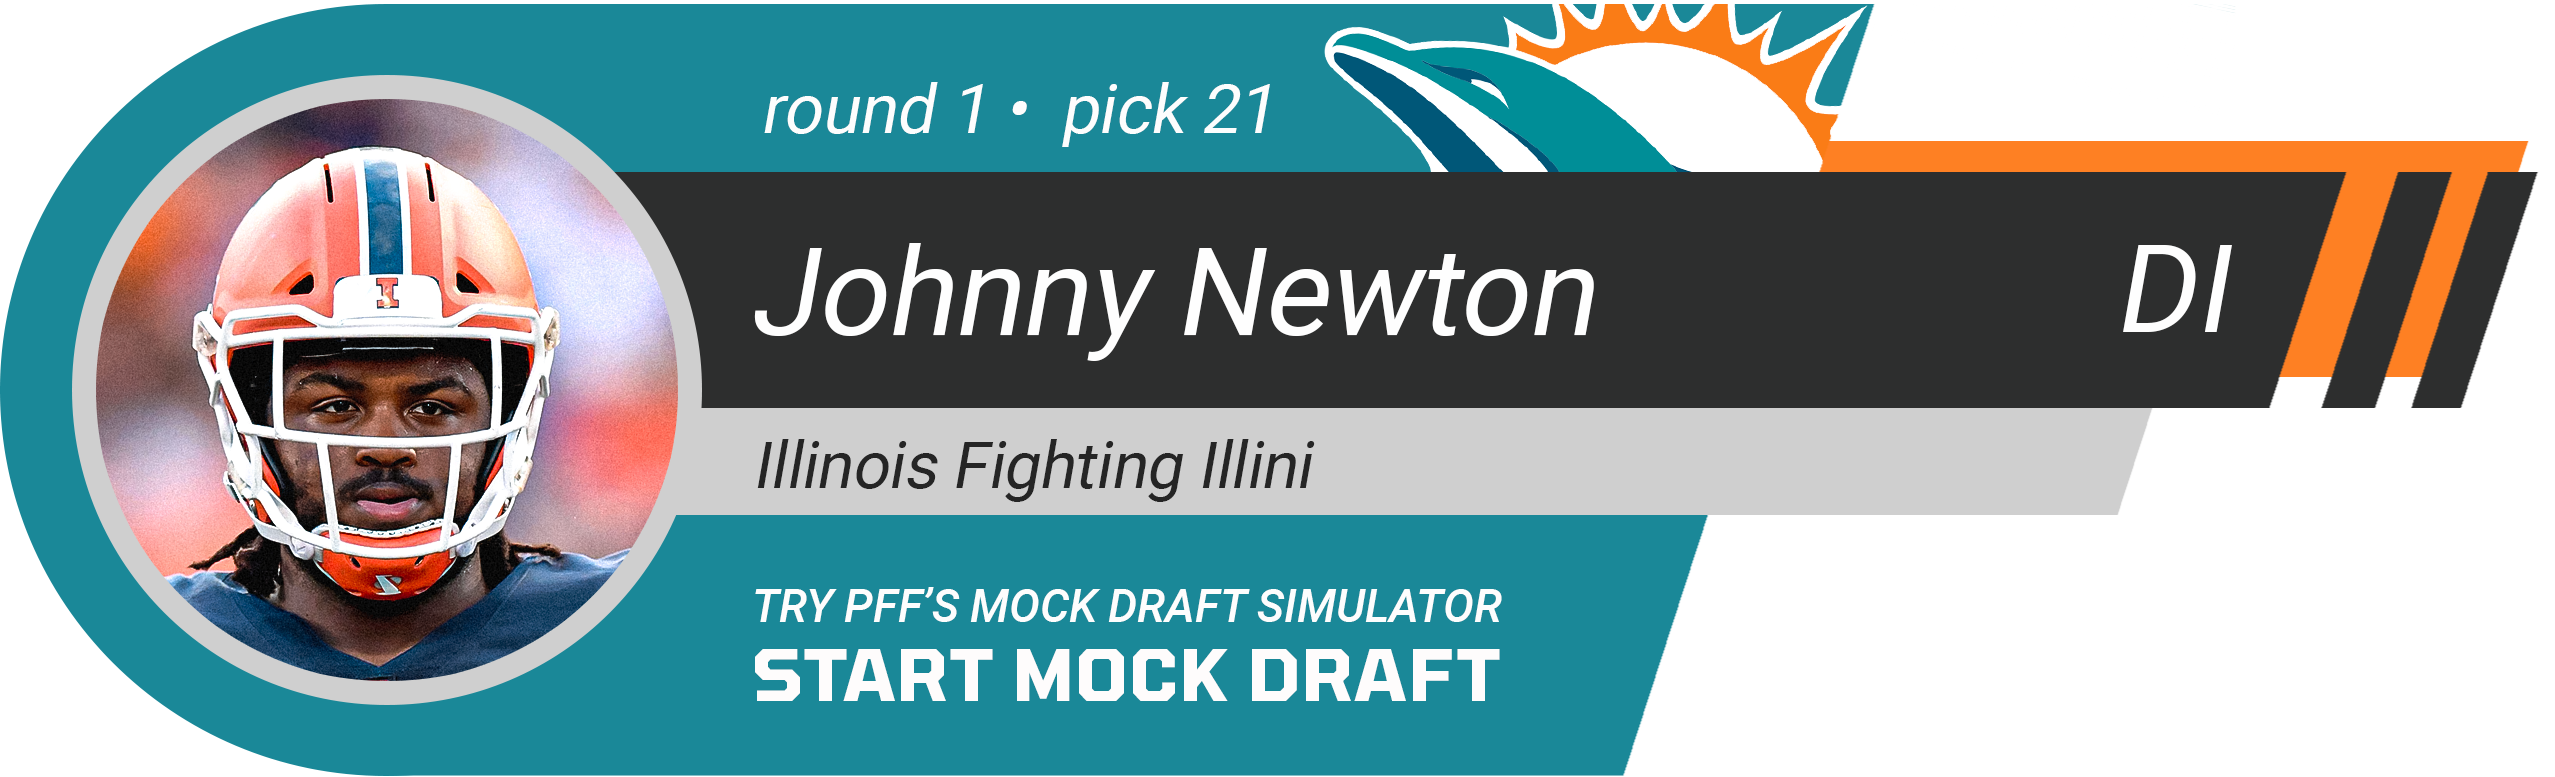 21. Miami Dolphins: DI Johnny Newton, Illinois